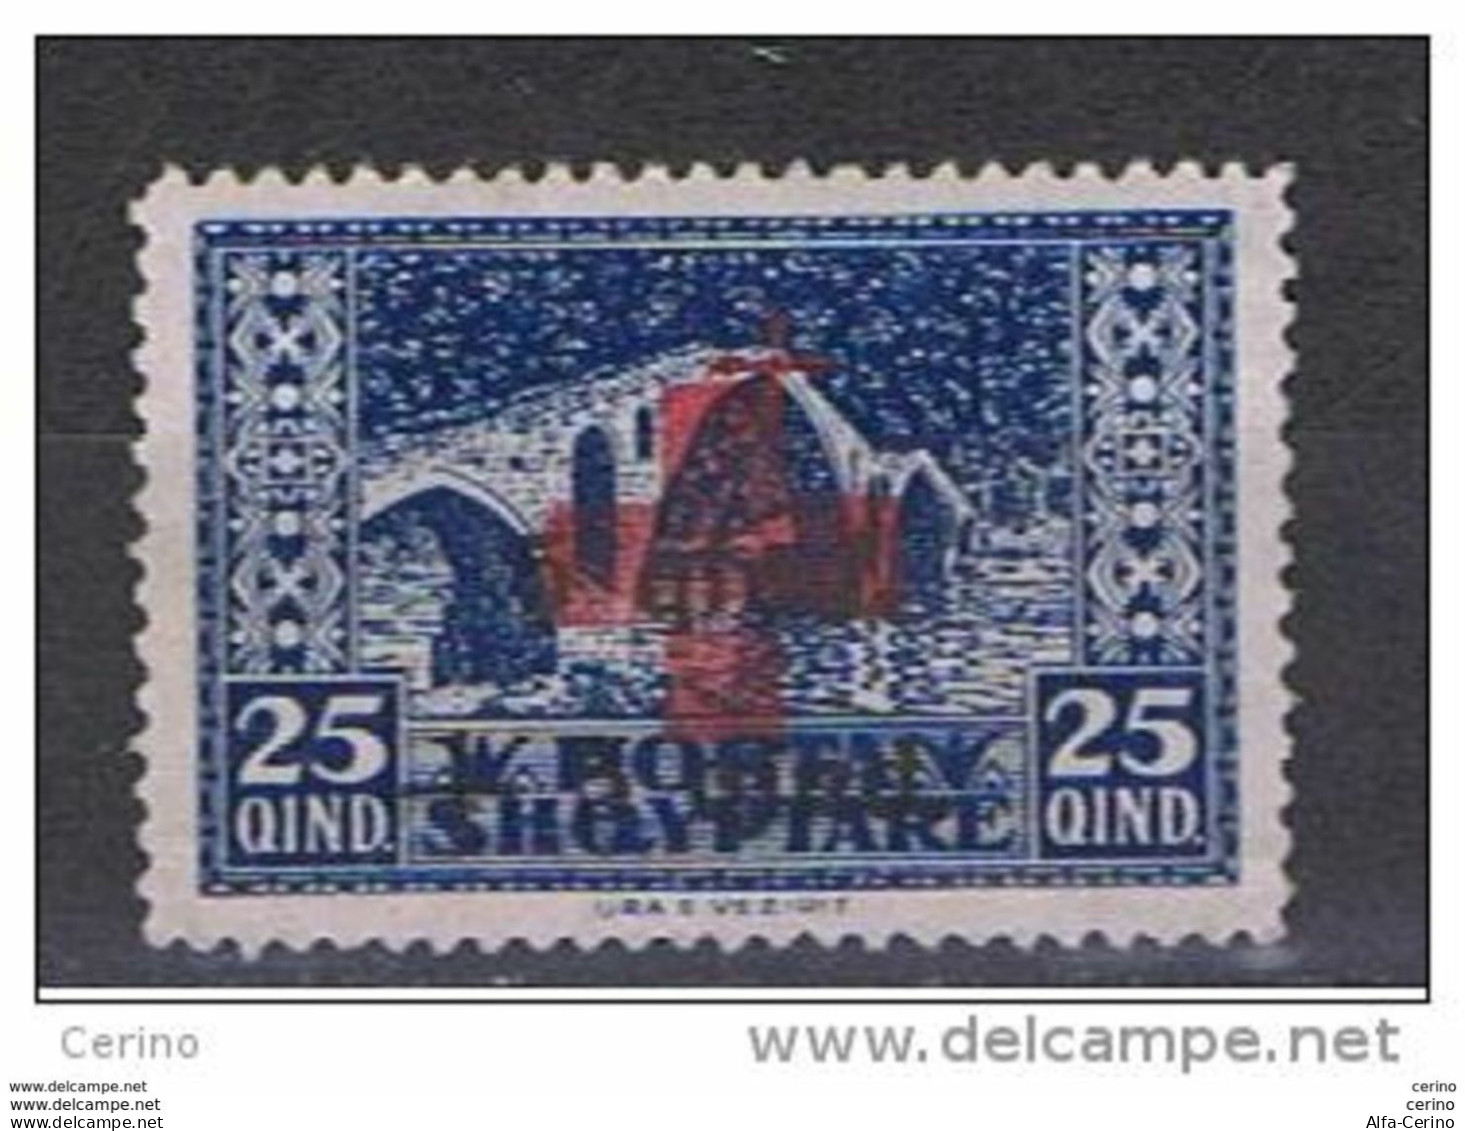 ALBANIA:  1924  SOPRASTAMPATO  -  15 Q. /5 Q. /25 Q. BLU  S.G. -  YV/TELL. 142 - Albania